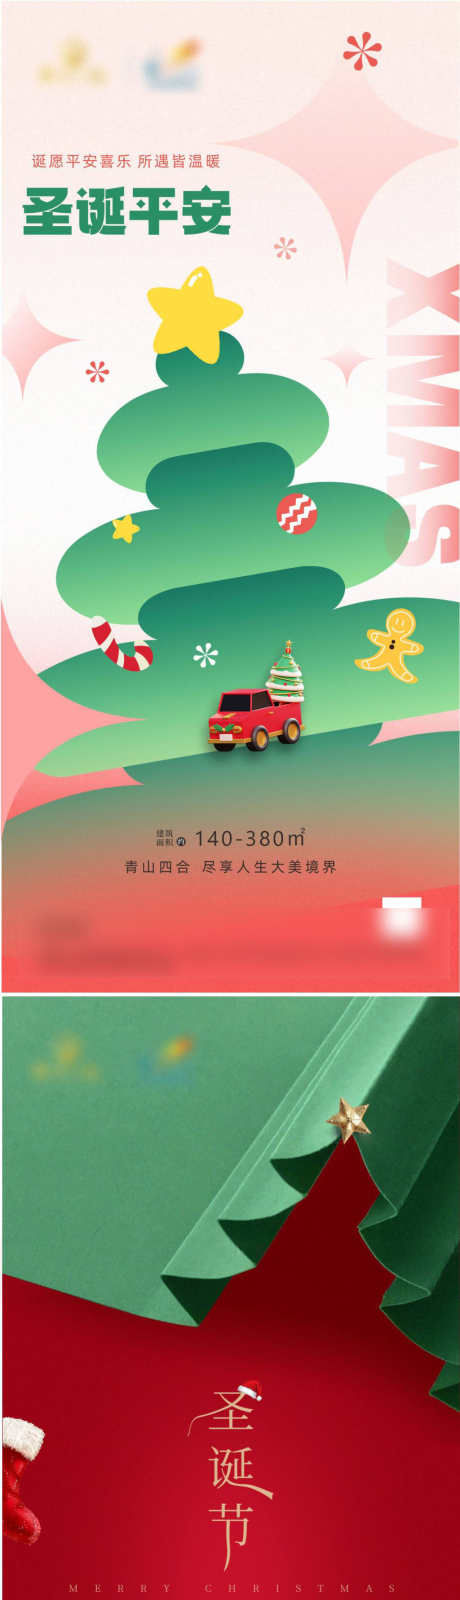 圣诞节海报_源文件下载_CDR格式_2038X8796像素-圣诞树,圣诞节,海报,圣诞,彩灯-作品编号:2023122116087223-志设-zs9.com